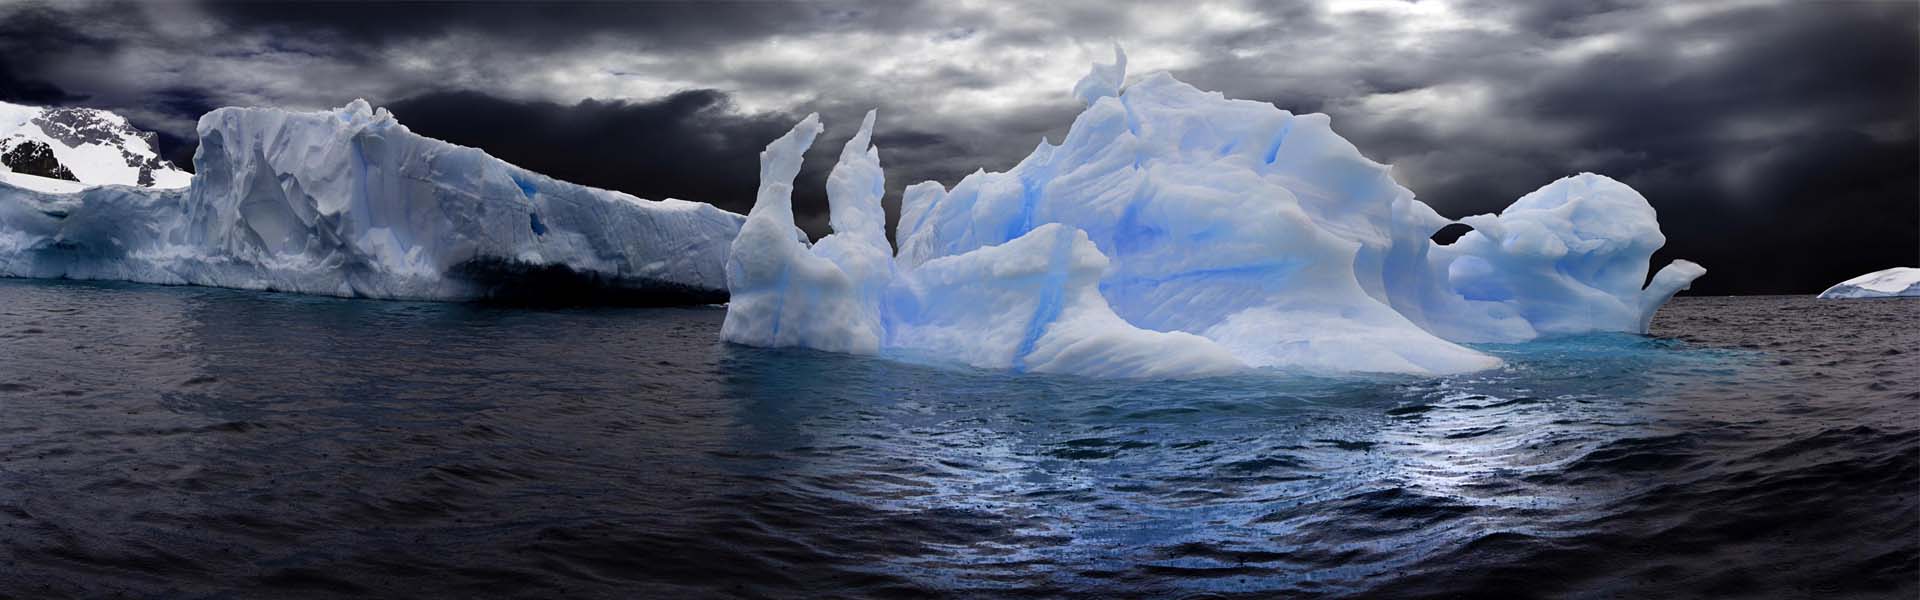 南极冰川再度大崩裂有什么影响  造成南极冰川再度大崩裂的原因是什么